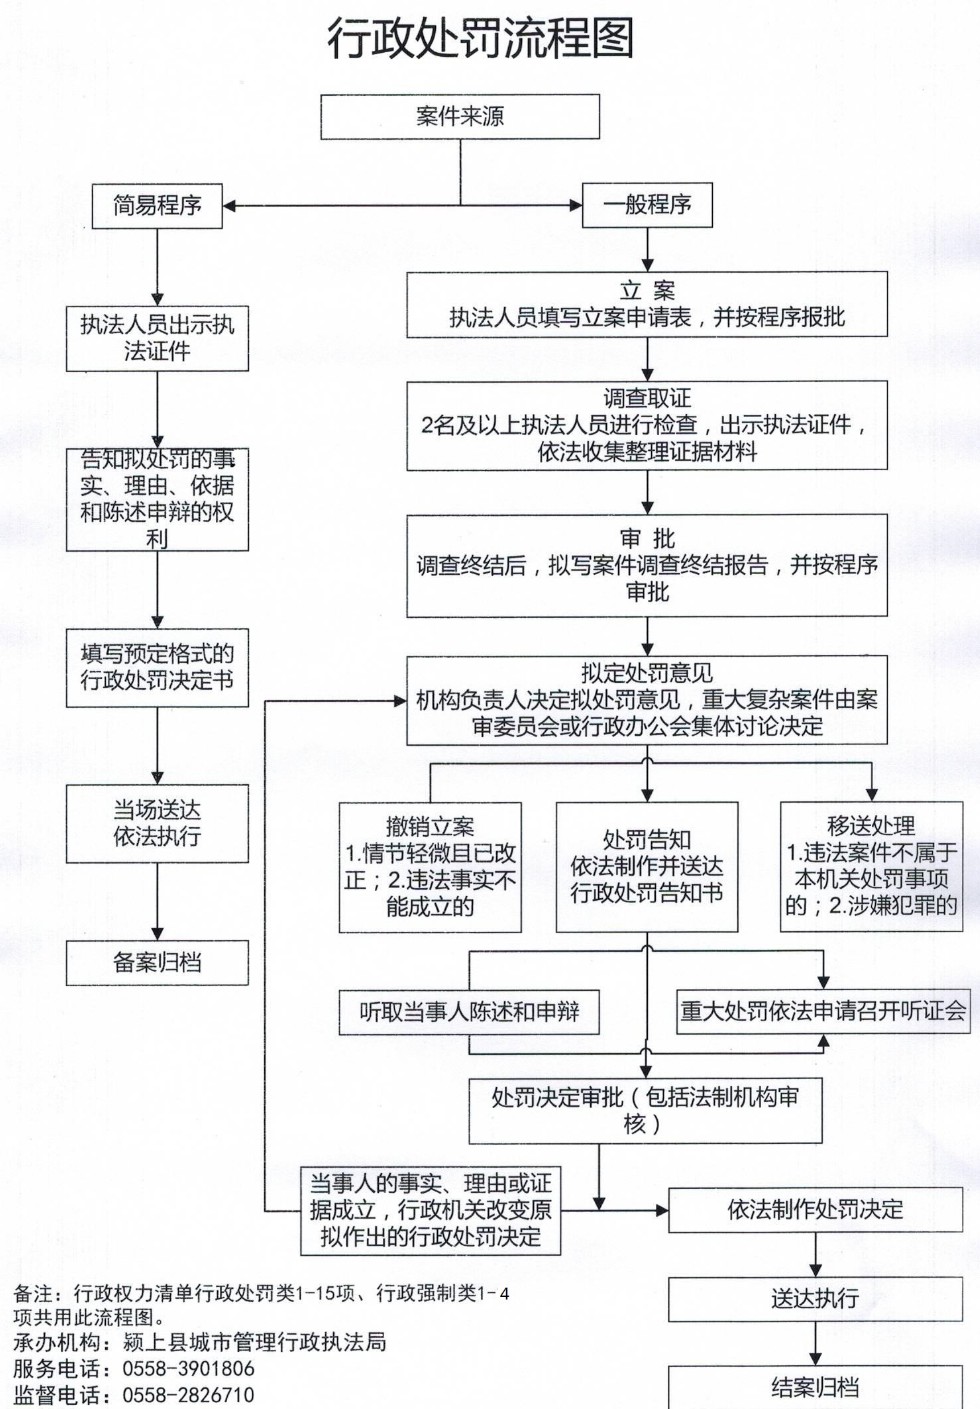 颍上县城管执法局行政处罚流程图